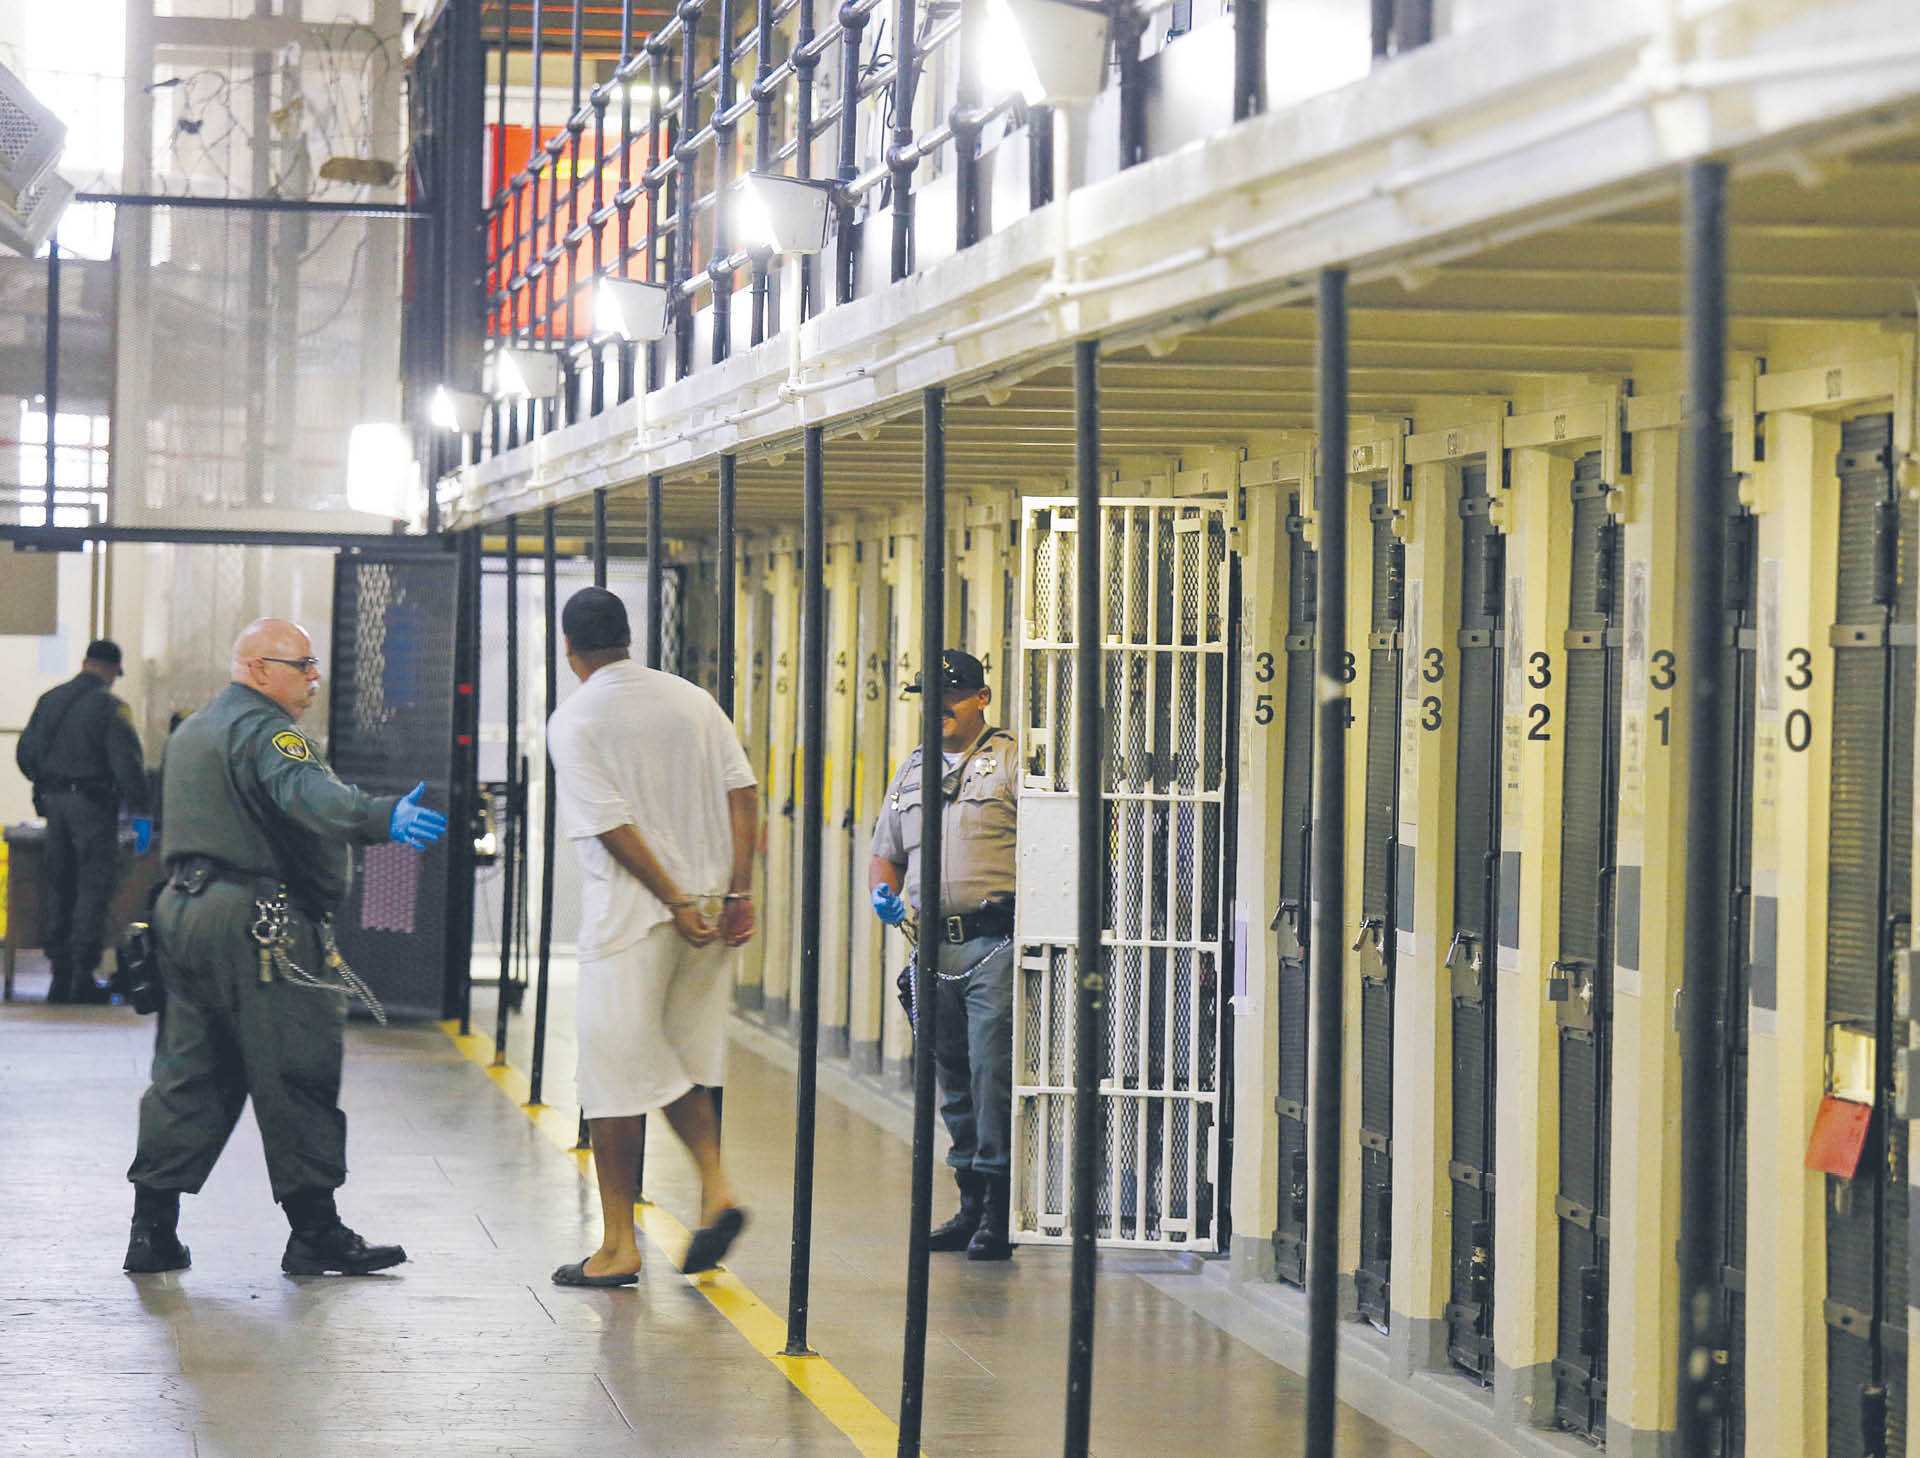 Kalifornijskie więzienie San Quentin. Tu znajduje się osobny blok z celami dla więźniów, którzy oczekują na wykonanie kary śmierci